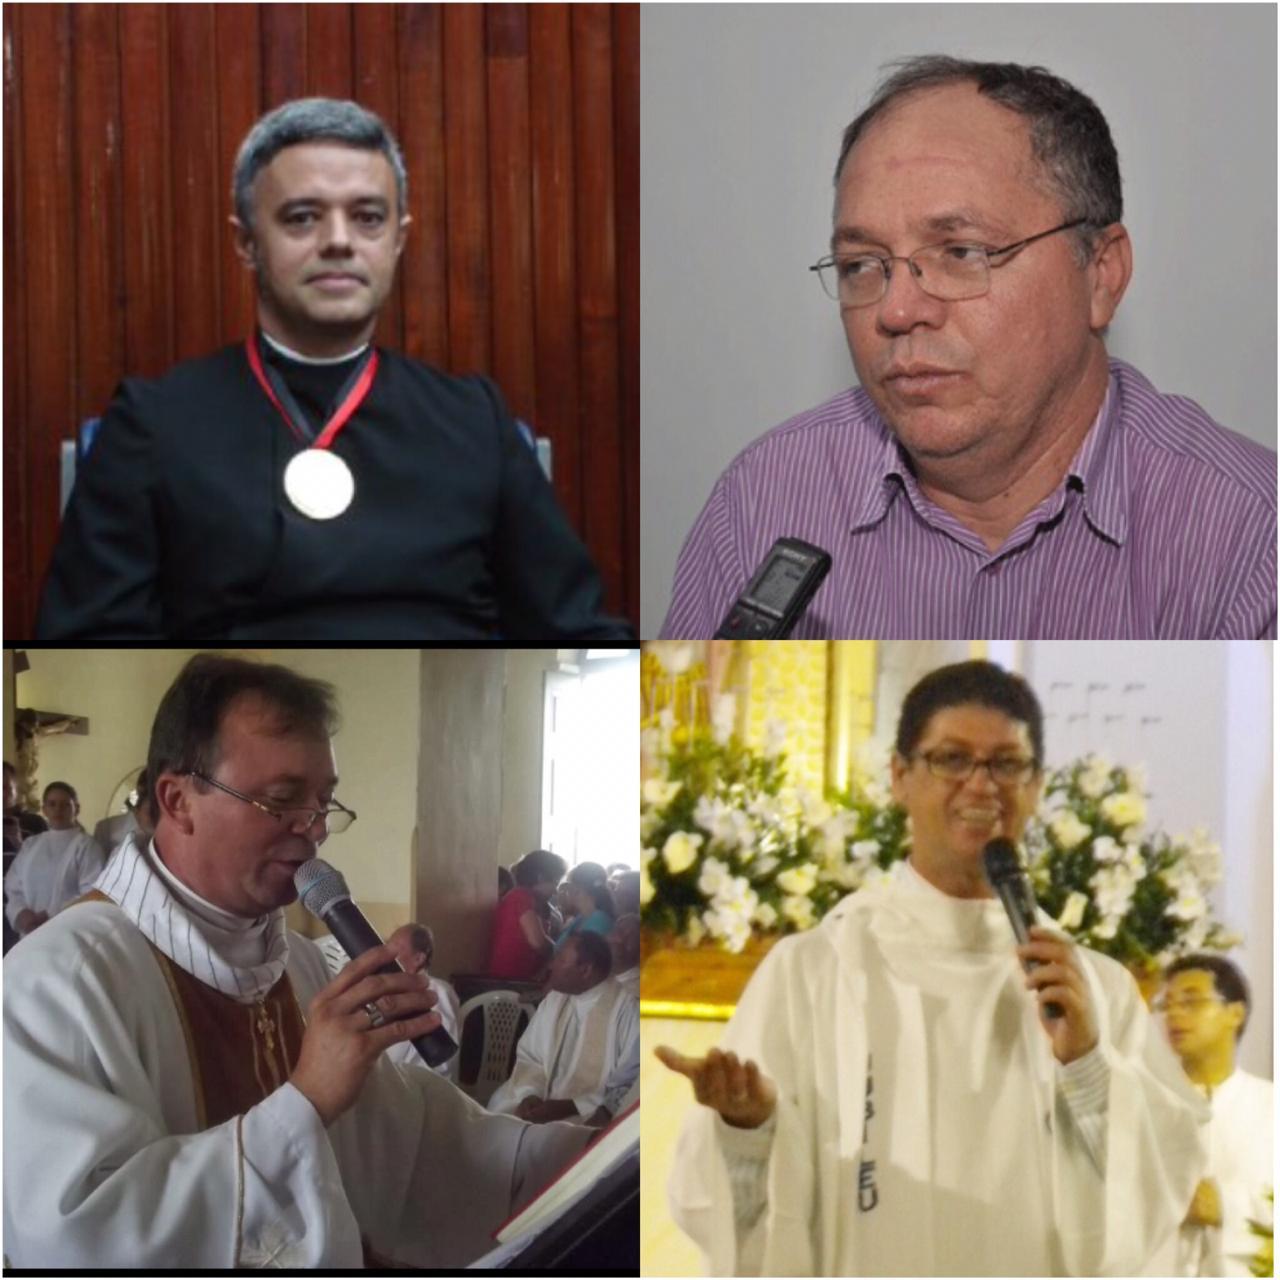 R$ 12 MILHÕES DE INDENIZAÇÃO: Dom Aldo e quatro padres são acusados de exploração sexual de adolescentes; Veja vídeo